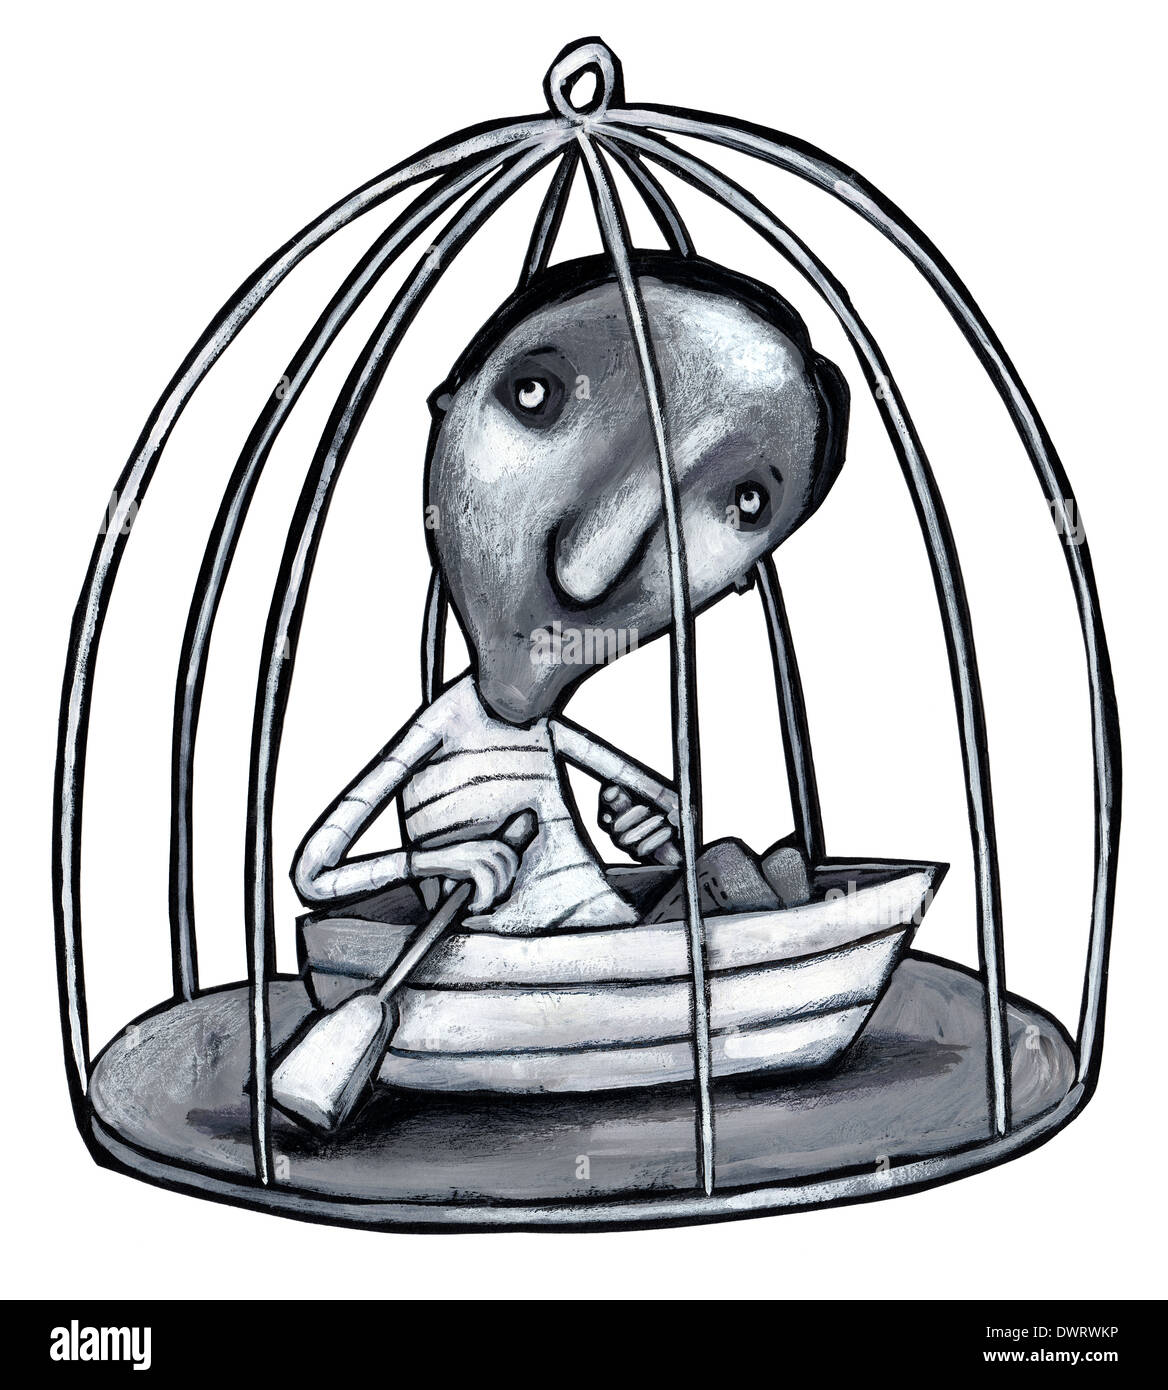 Image de l'homme illustration avec cage en bateau représentant l'esclavage Banque D'Images